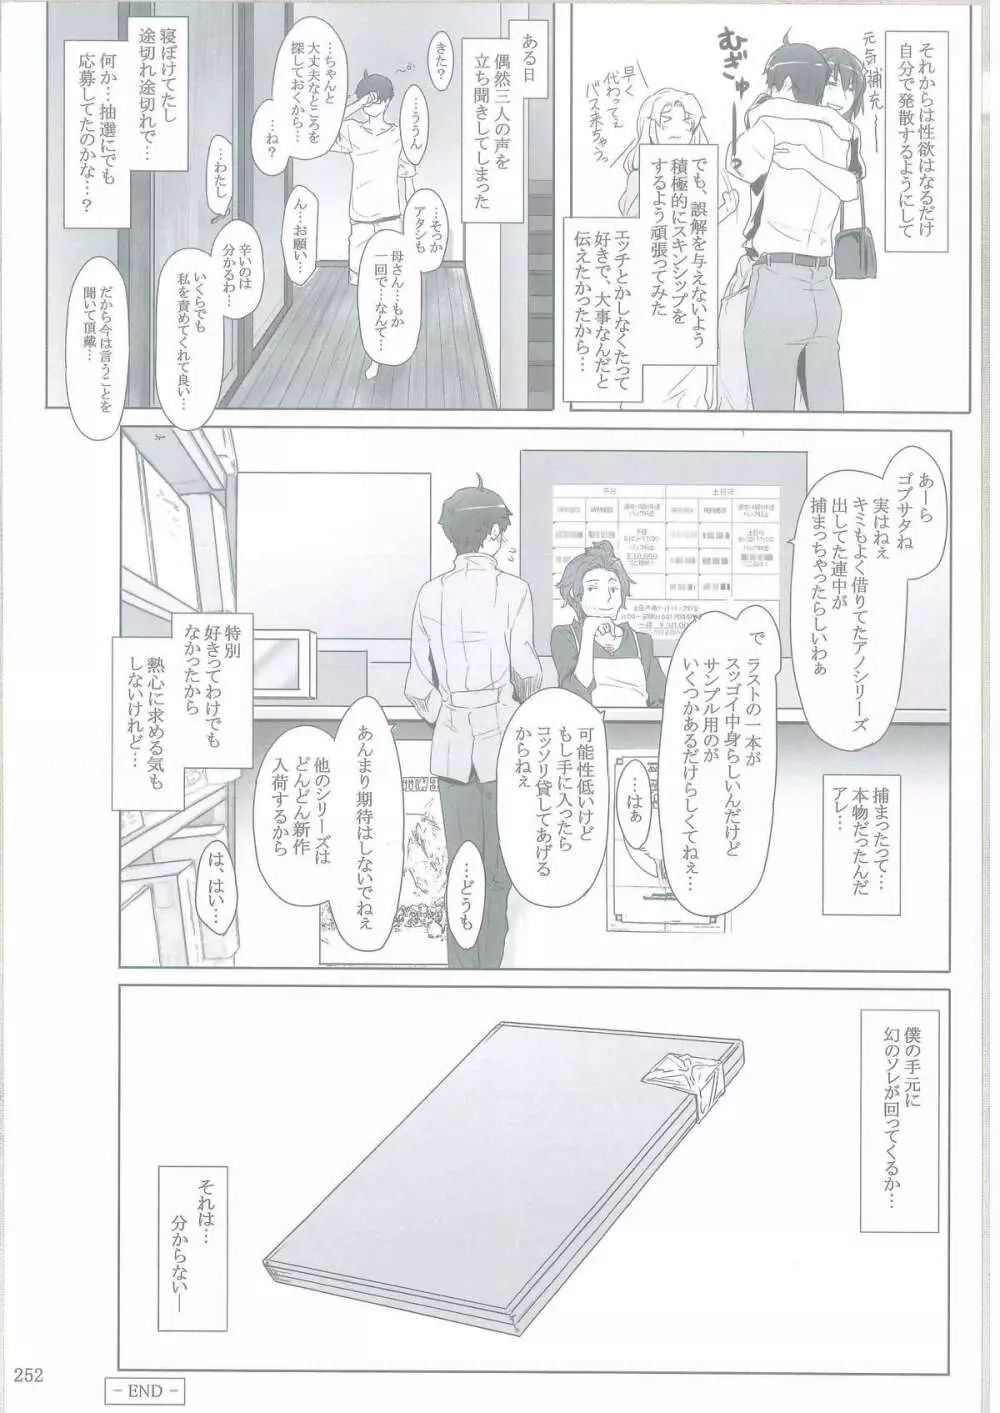 橘さん家ノ男性事情 - page249